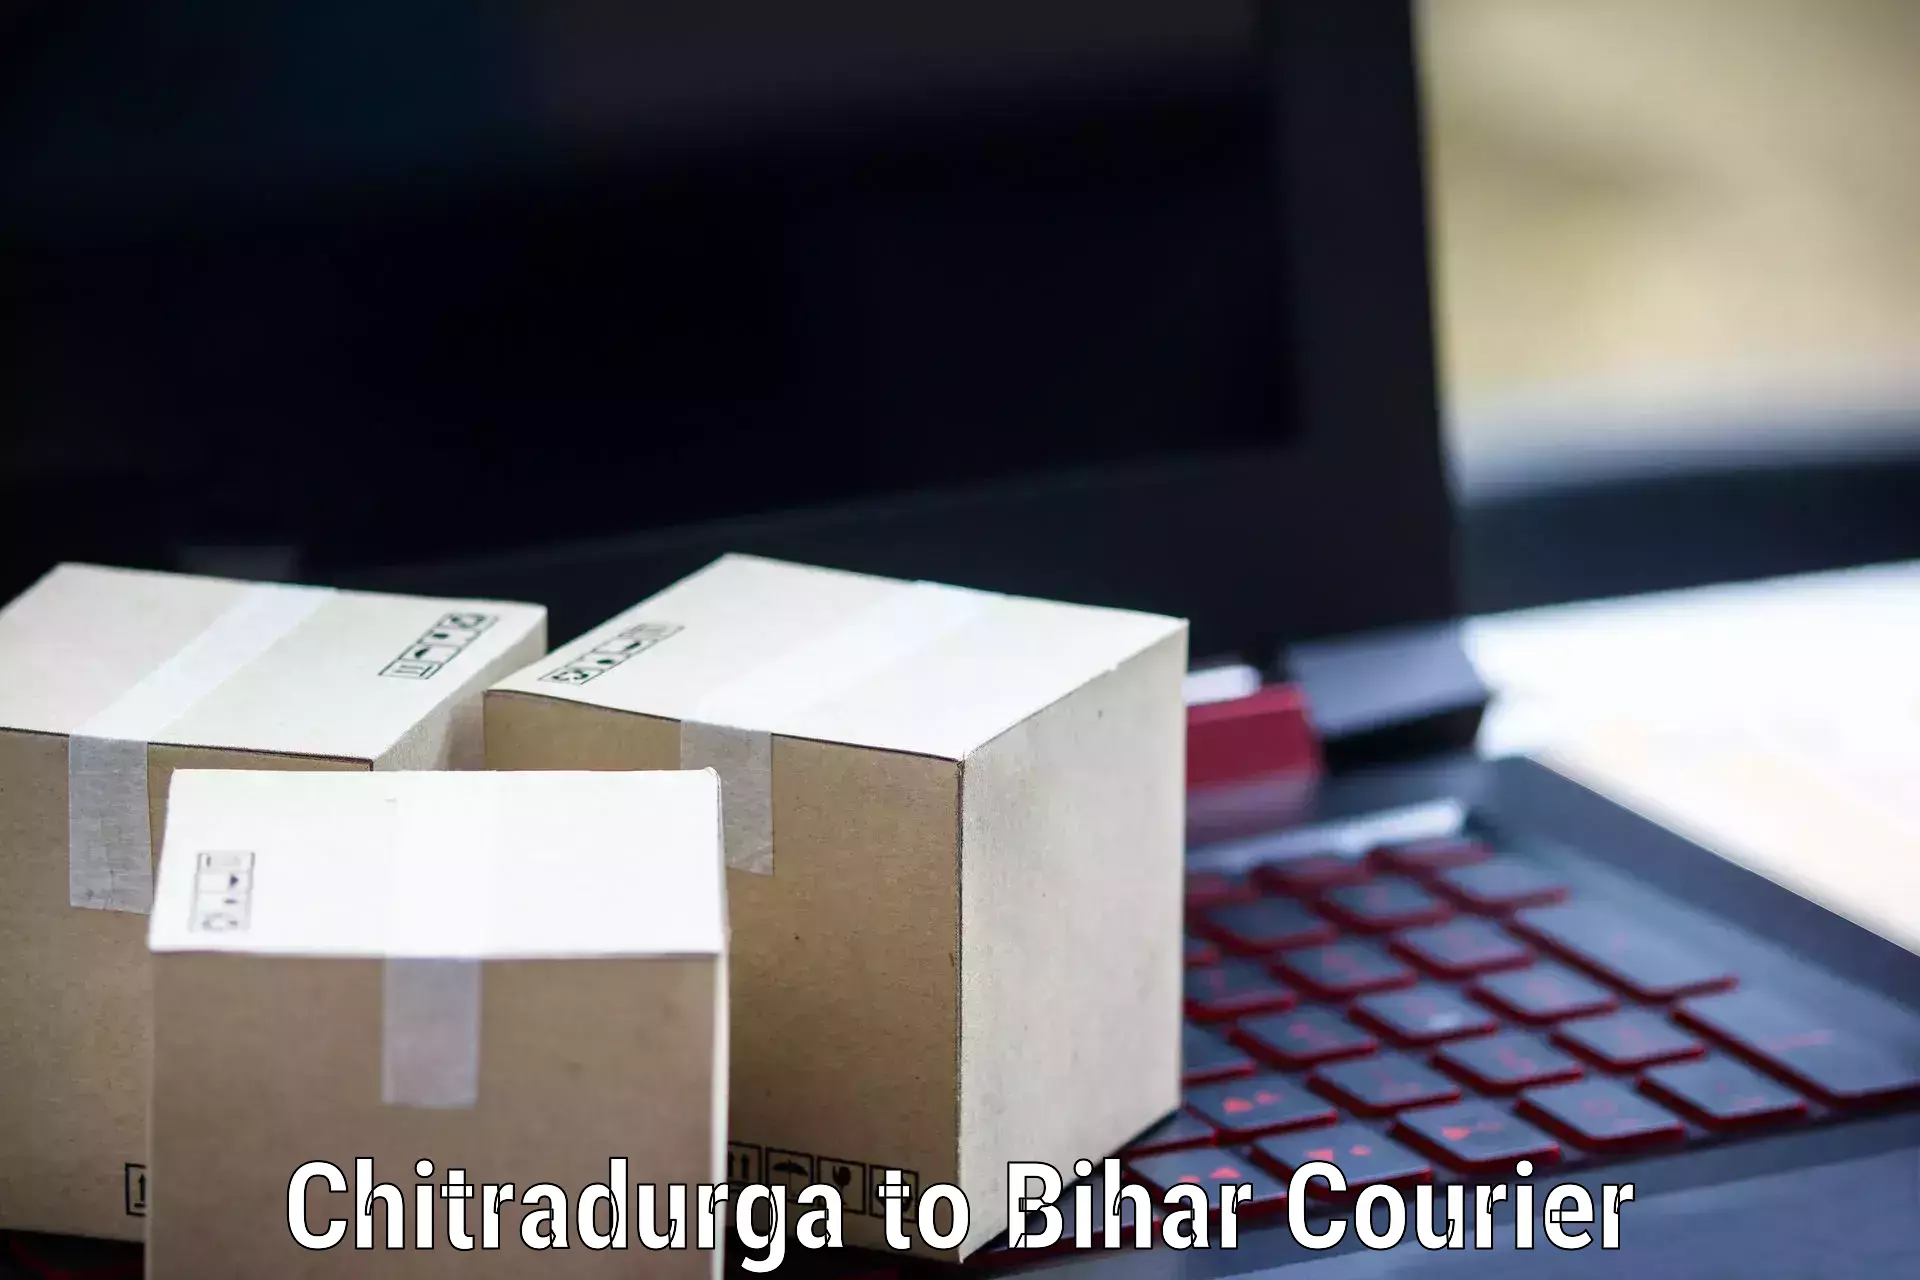 Local delivery service Chitradurga to Manjhaul